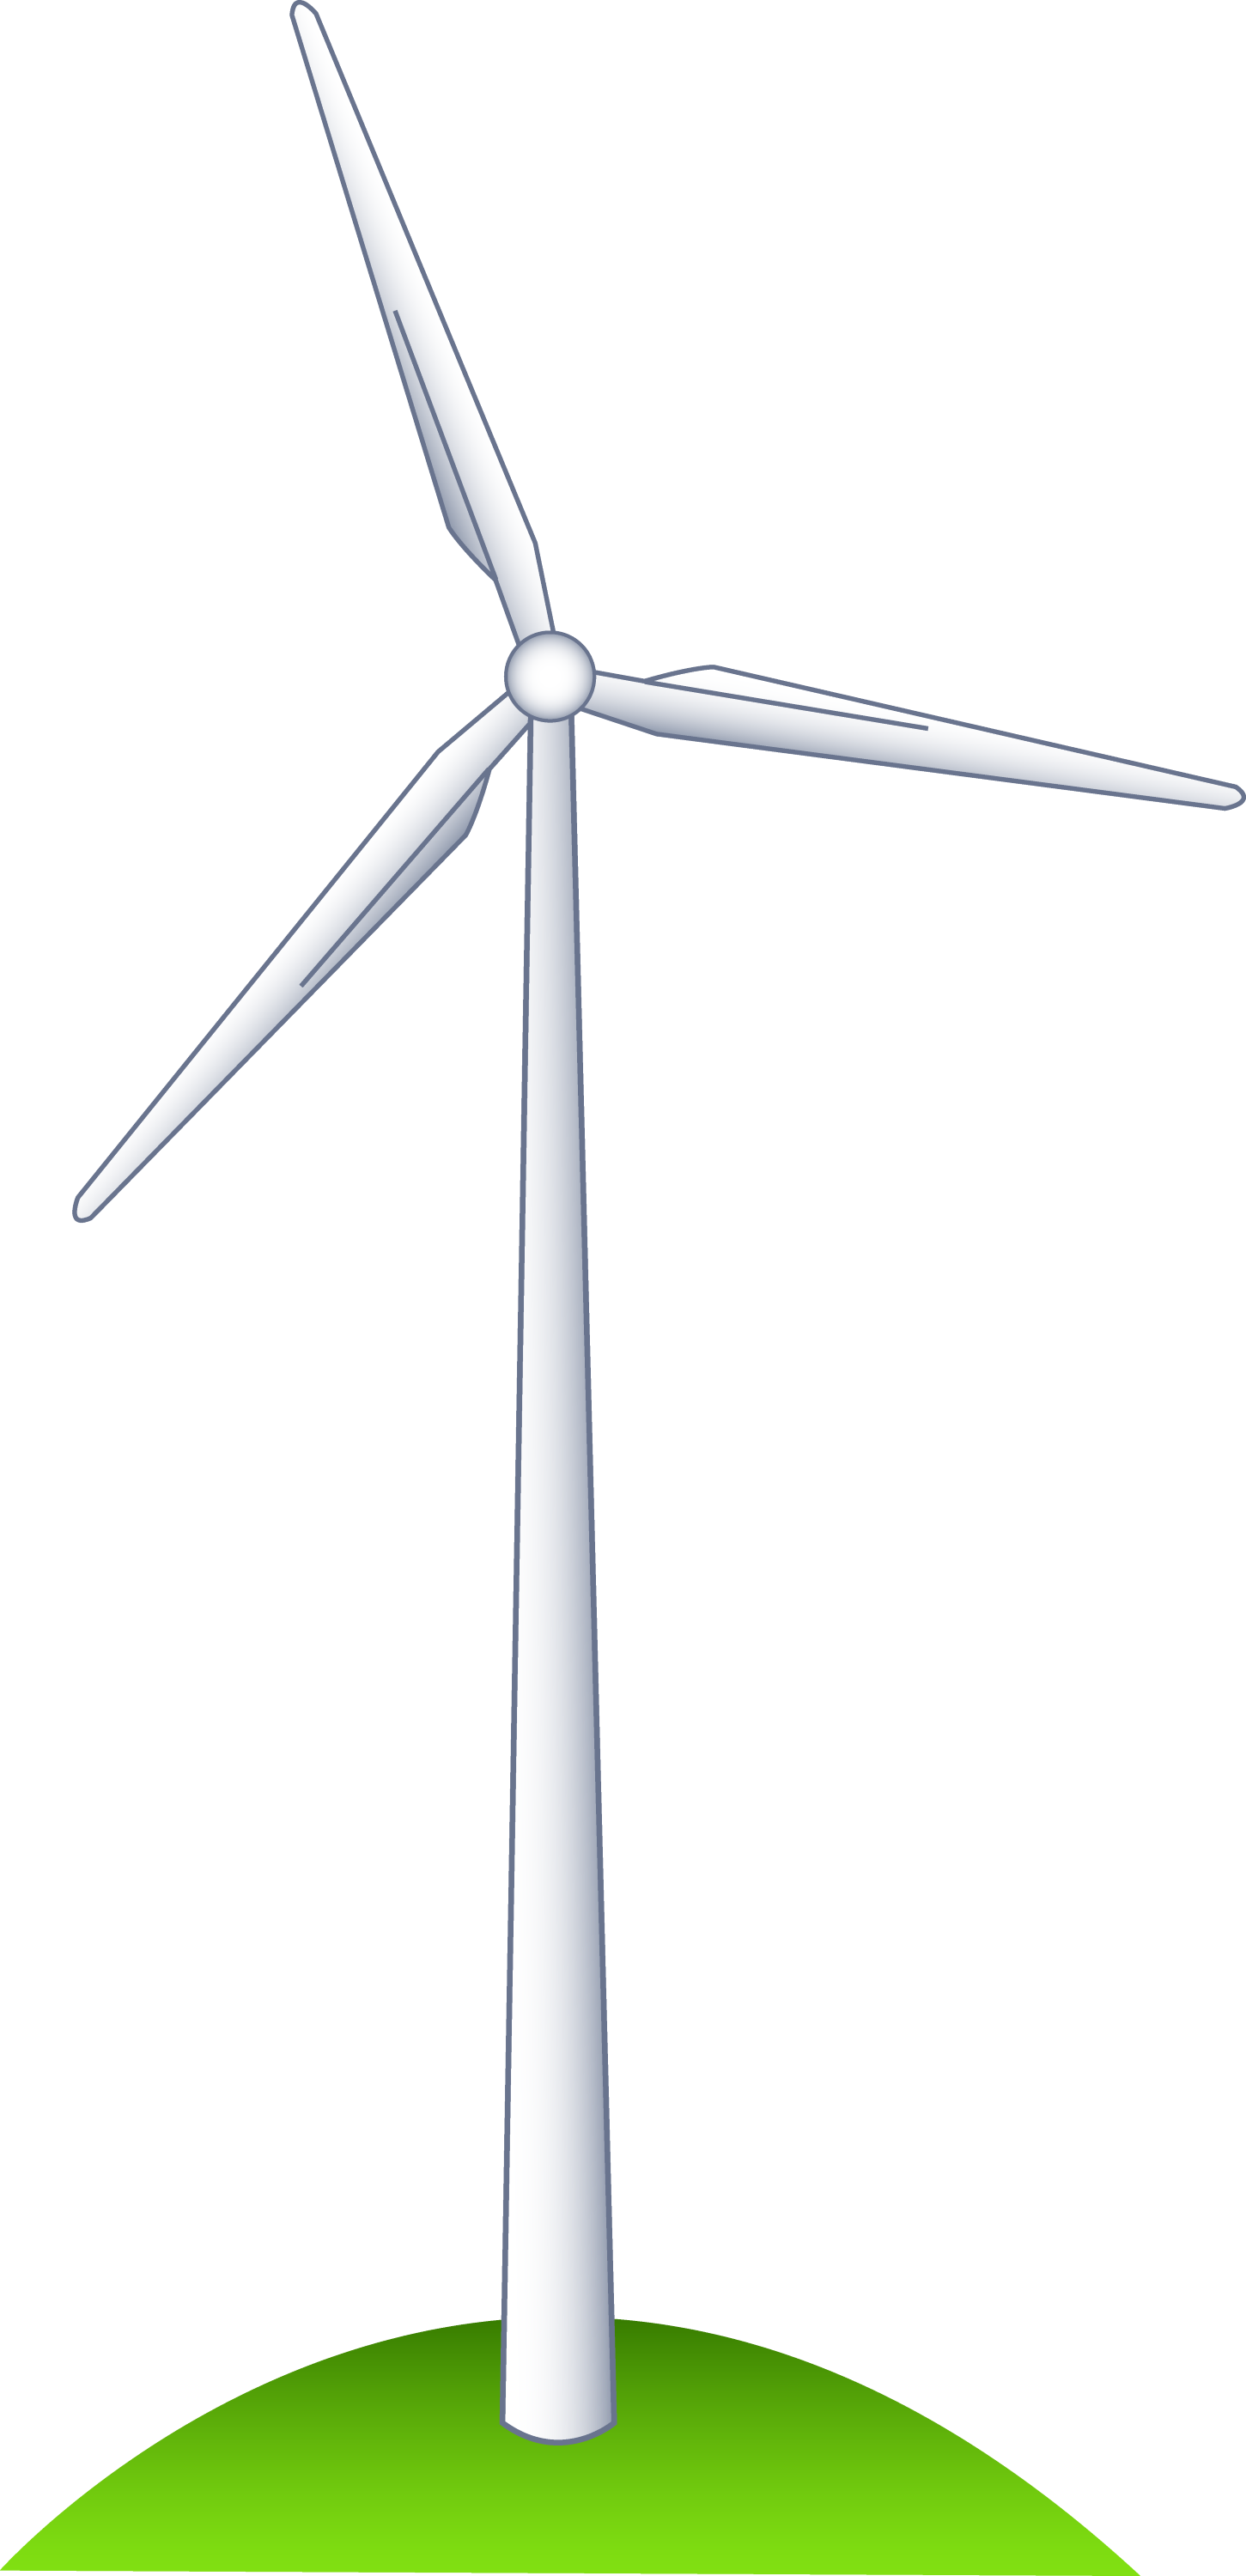 Wind Turbine on a Hill - Free Clip Art